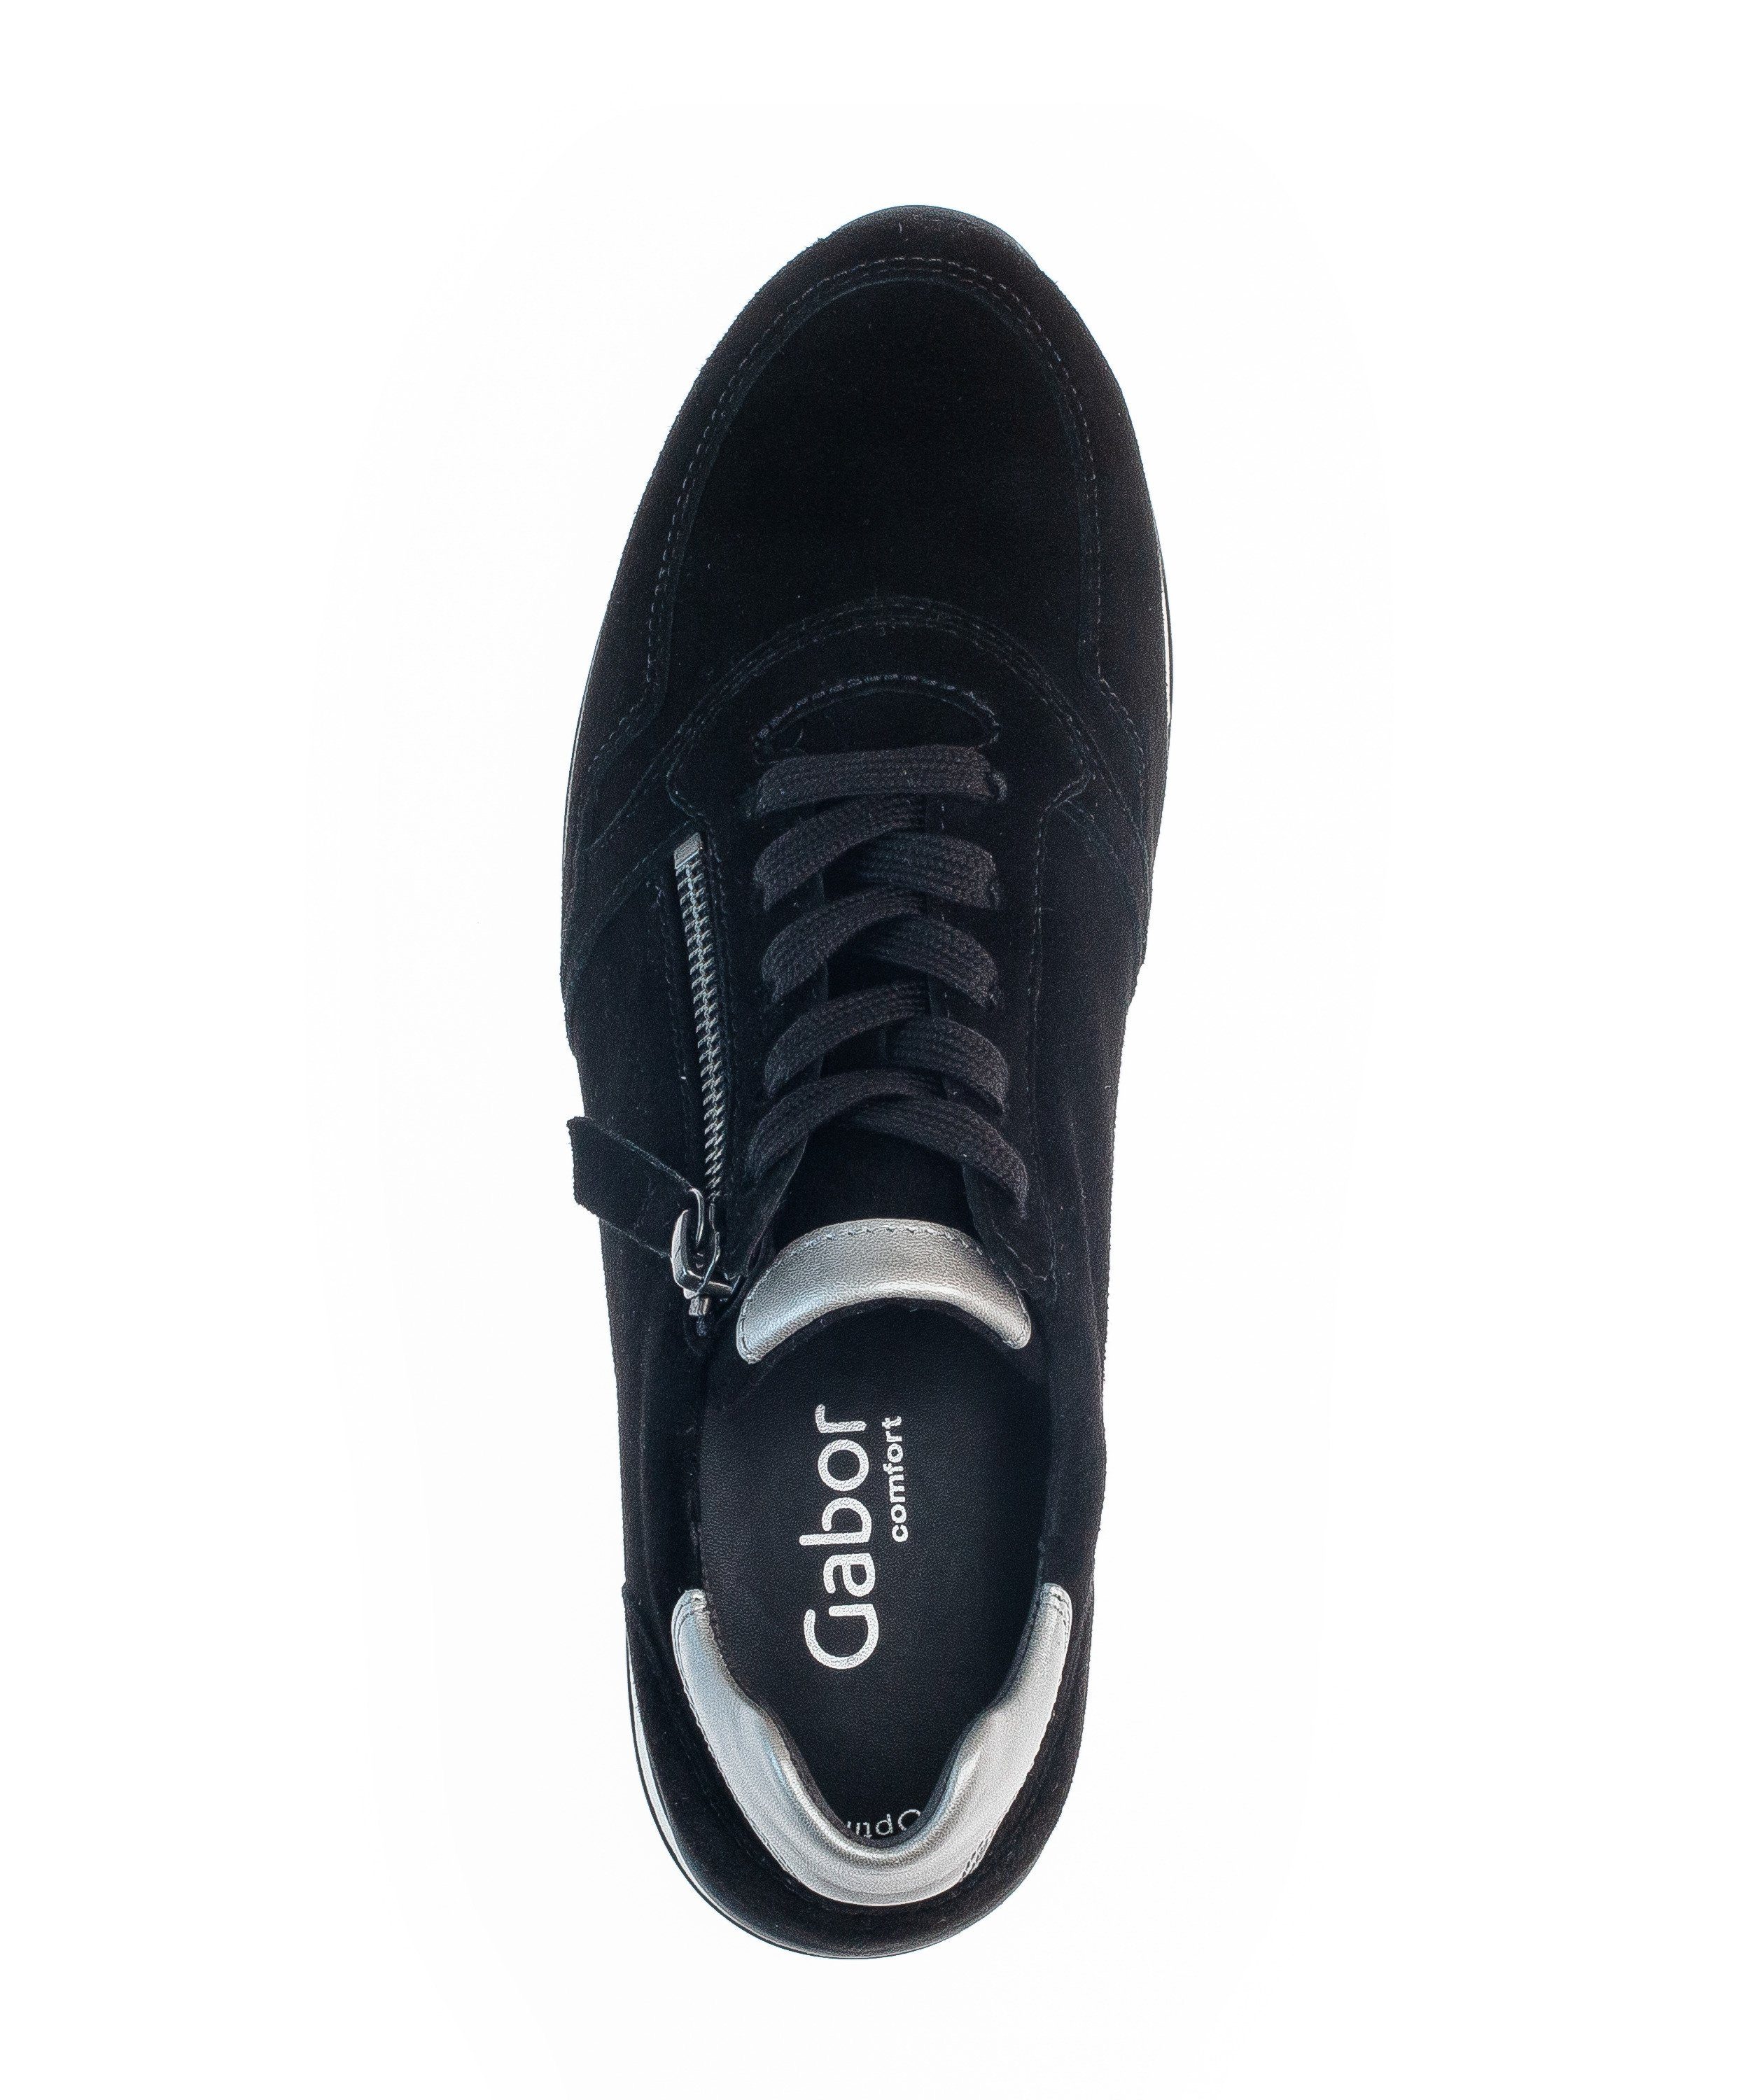 Gabor Comfort schwarz-bunt-kombiniert-schwarz-bunt-kombiniert Sneaker